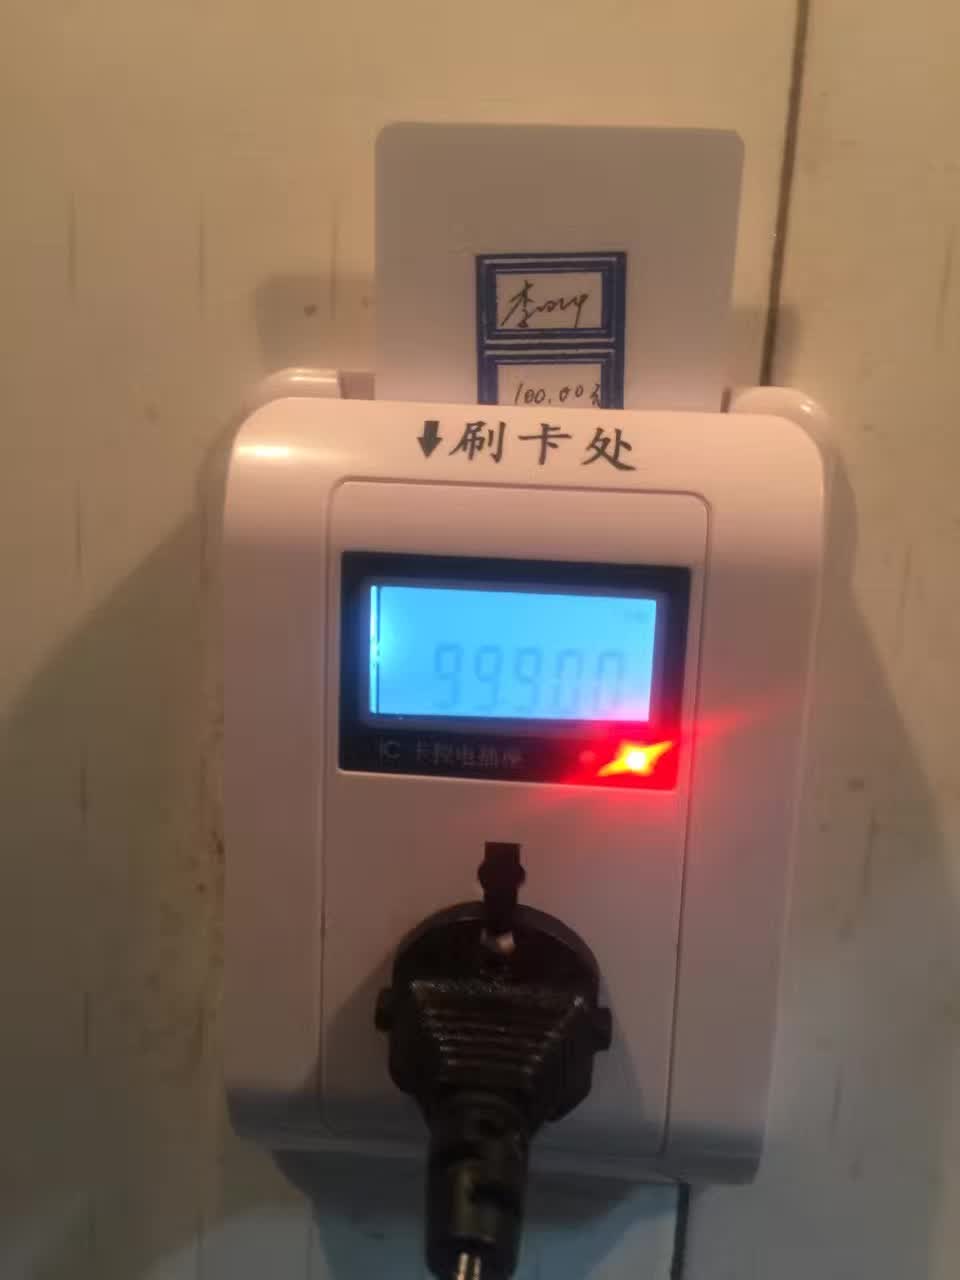 东城控电控水酒店插卡取电计量计时收费软件预防火灾